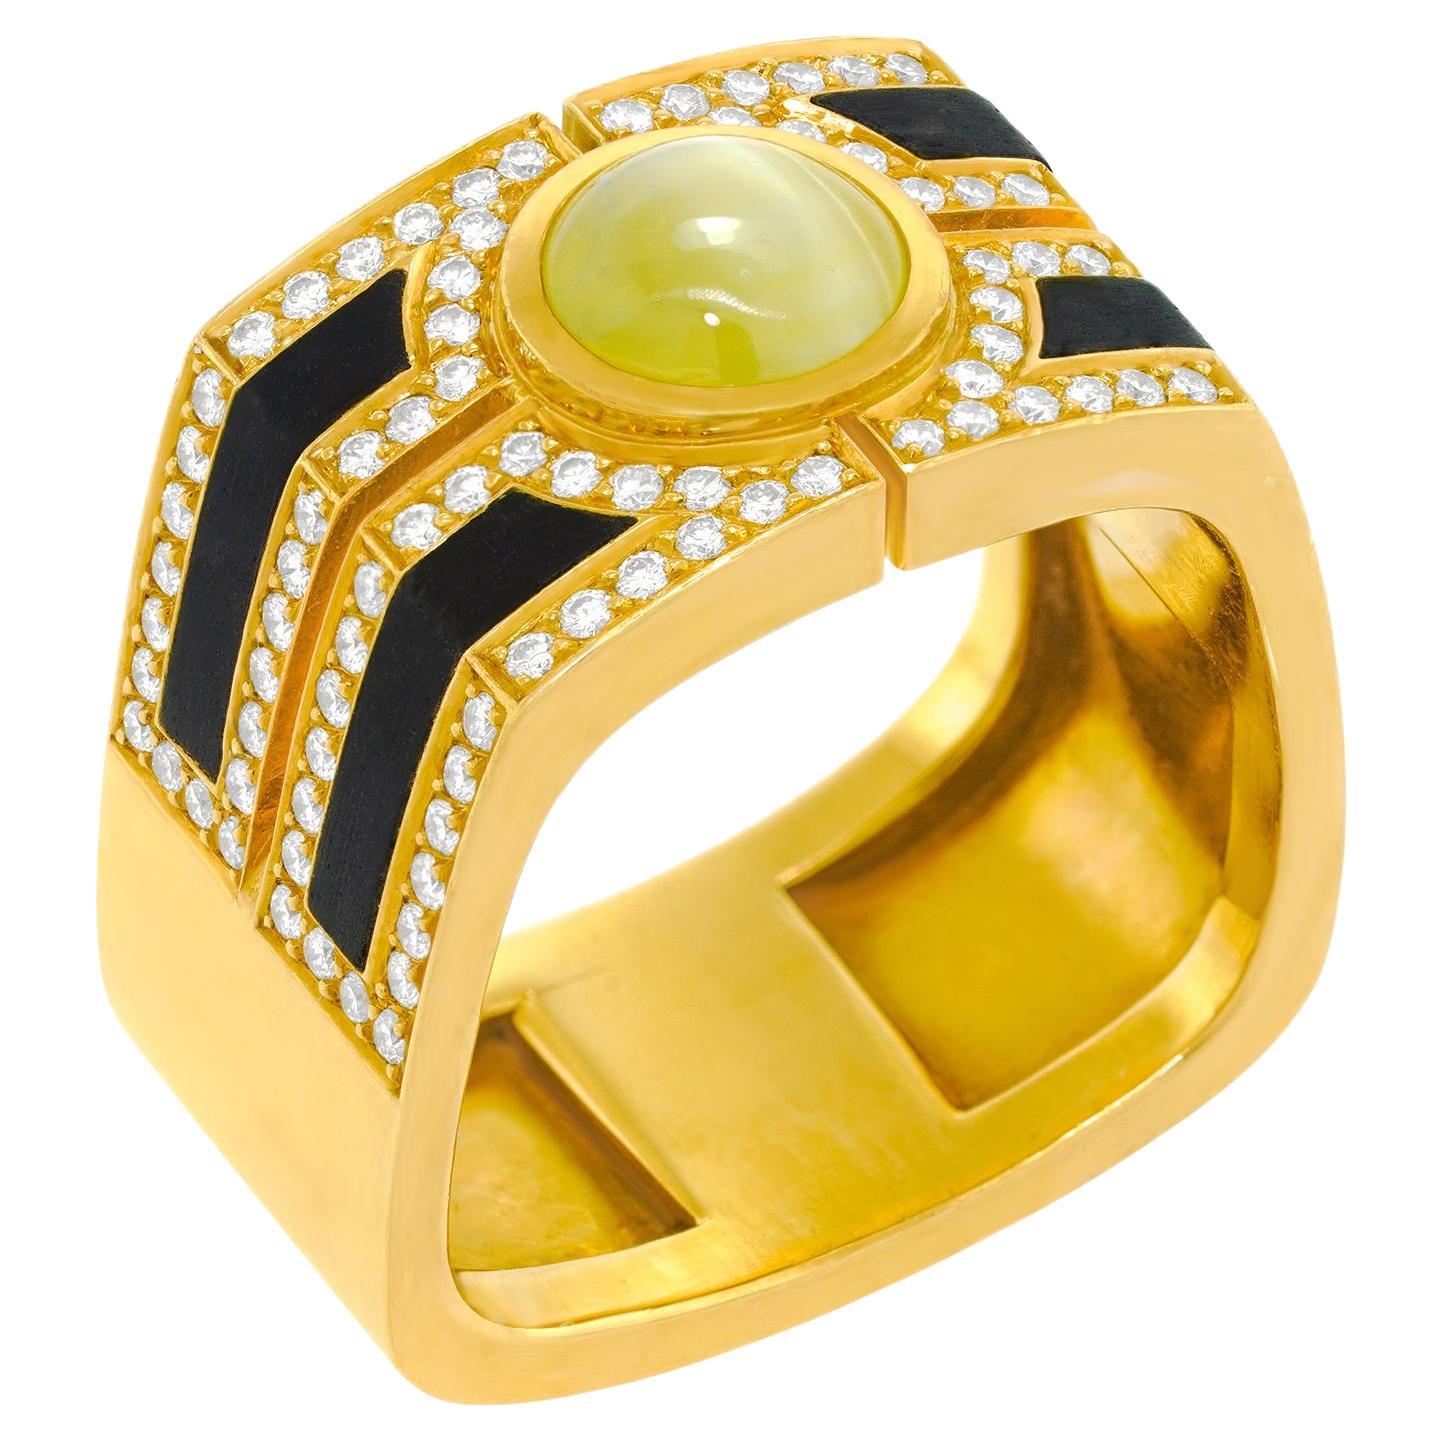 Aldo Bertozzi Spectacular Hyper Modern Ring For Sale